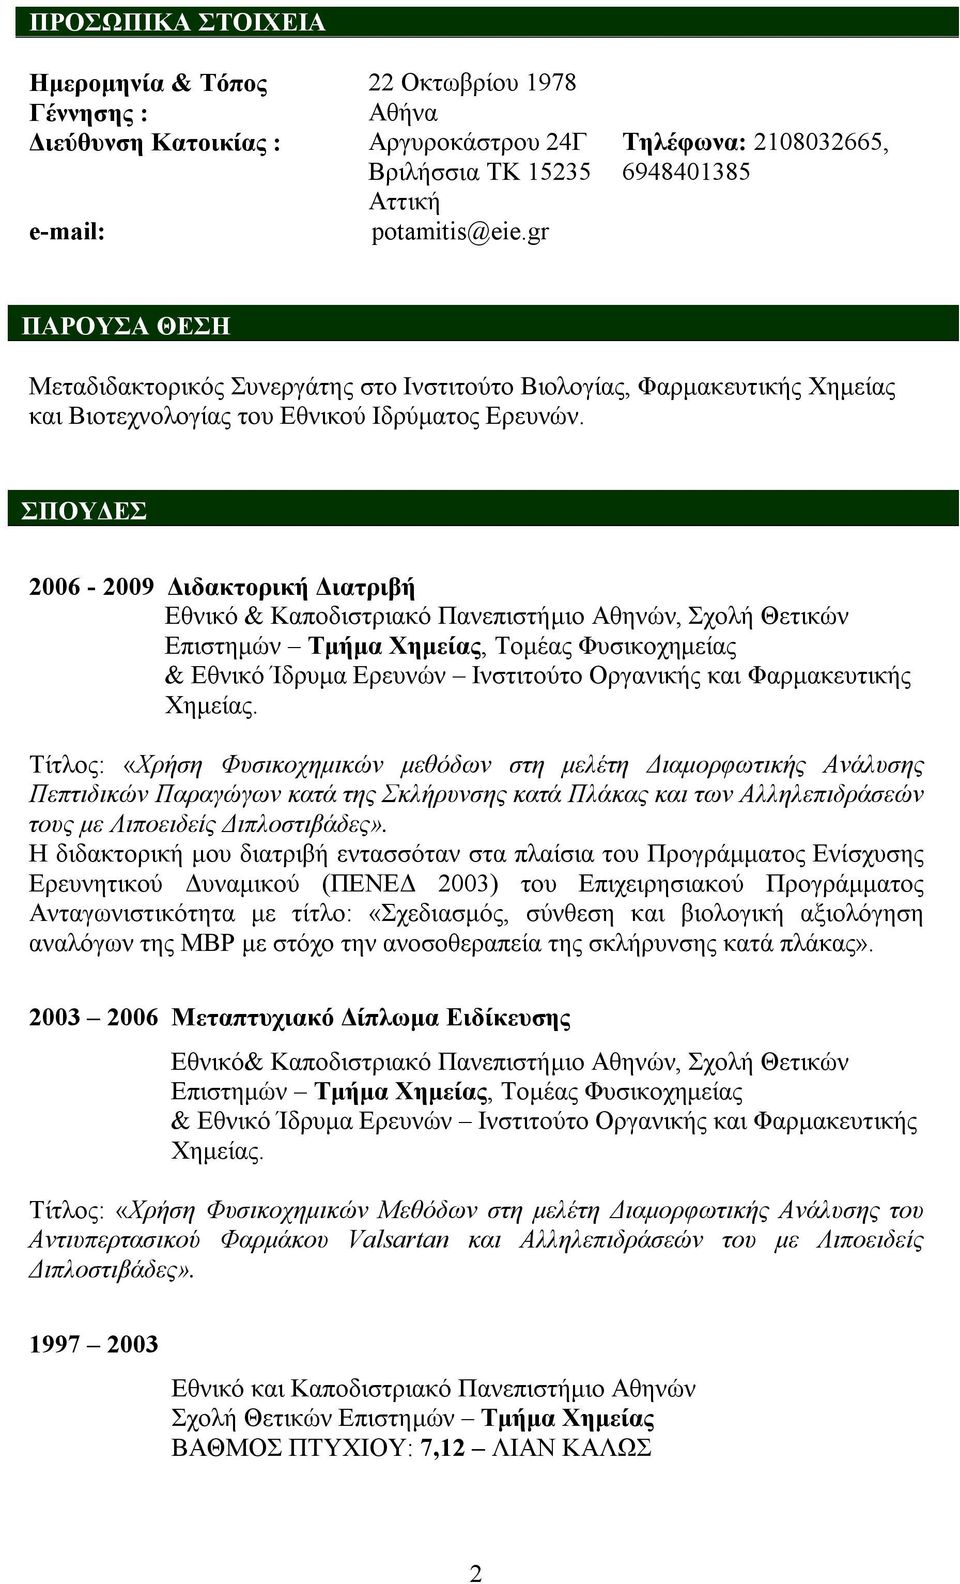 ΣΠΟΥΔΕΣ 2006-2009 Διδακτορική Διατριβή Εθνικό & Καποδιστριακό Πανεπιστήμιο Αθηνών, Σχολή Θετικών Επιστημών Τμήμα Χημείας, Τομέας Φυσικοχημείας & Εθνικό Ίδρυμα Ερευνών Ινστιτούτο Οργανικής και